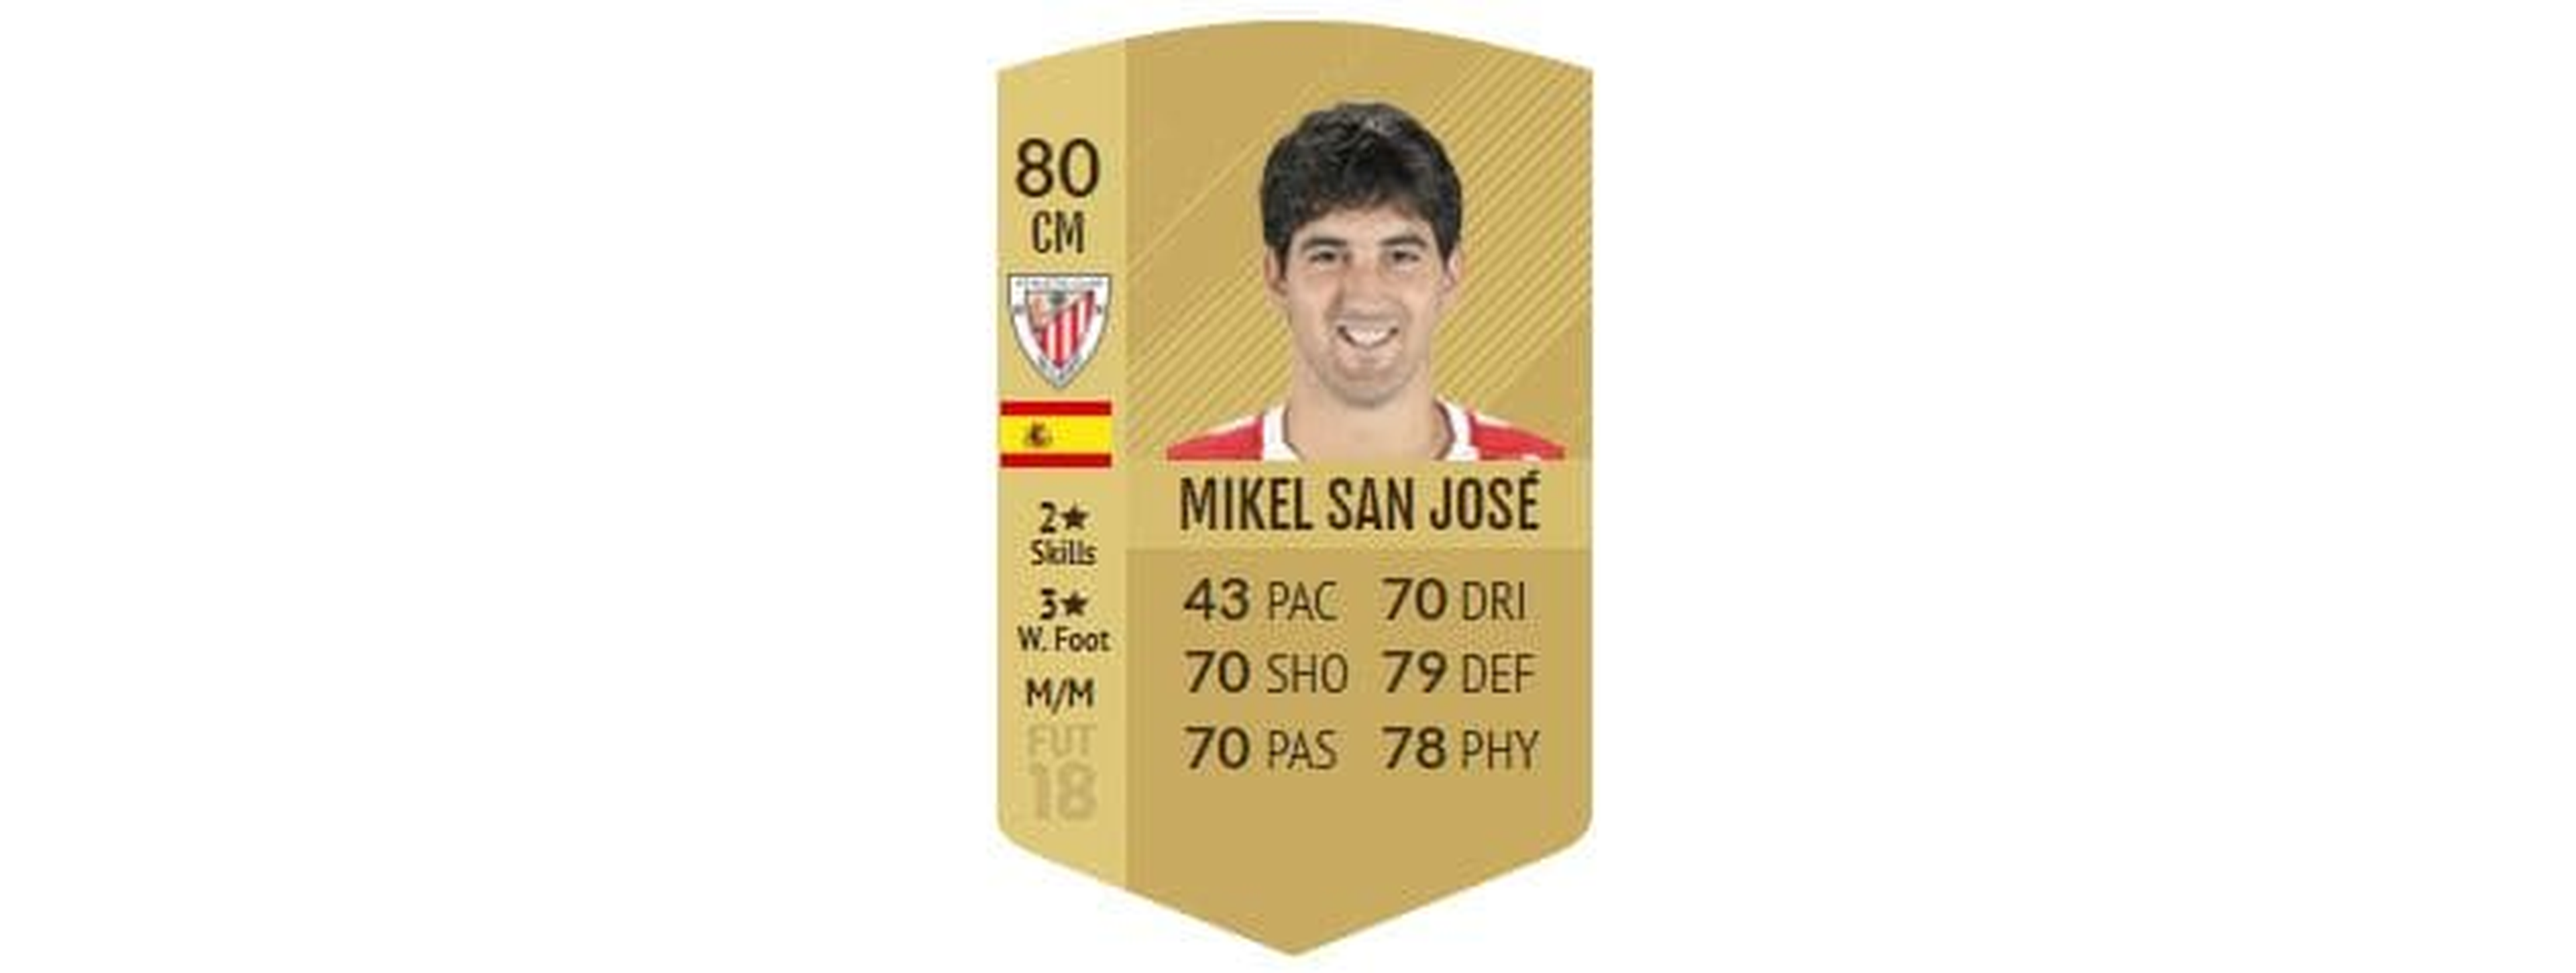 FIFA 18 - Mikel San José